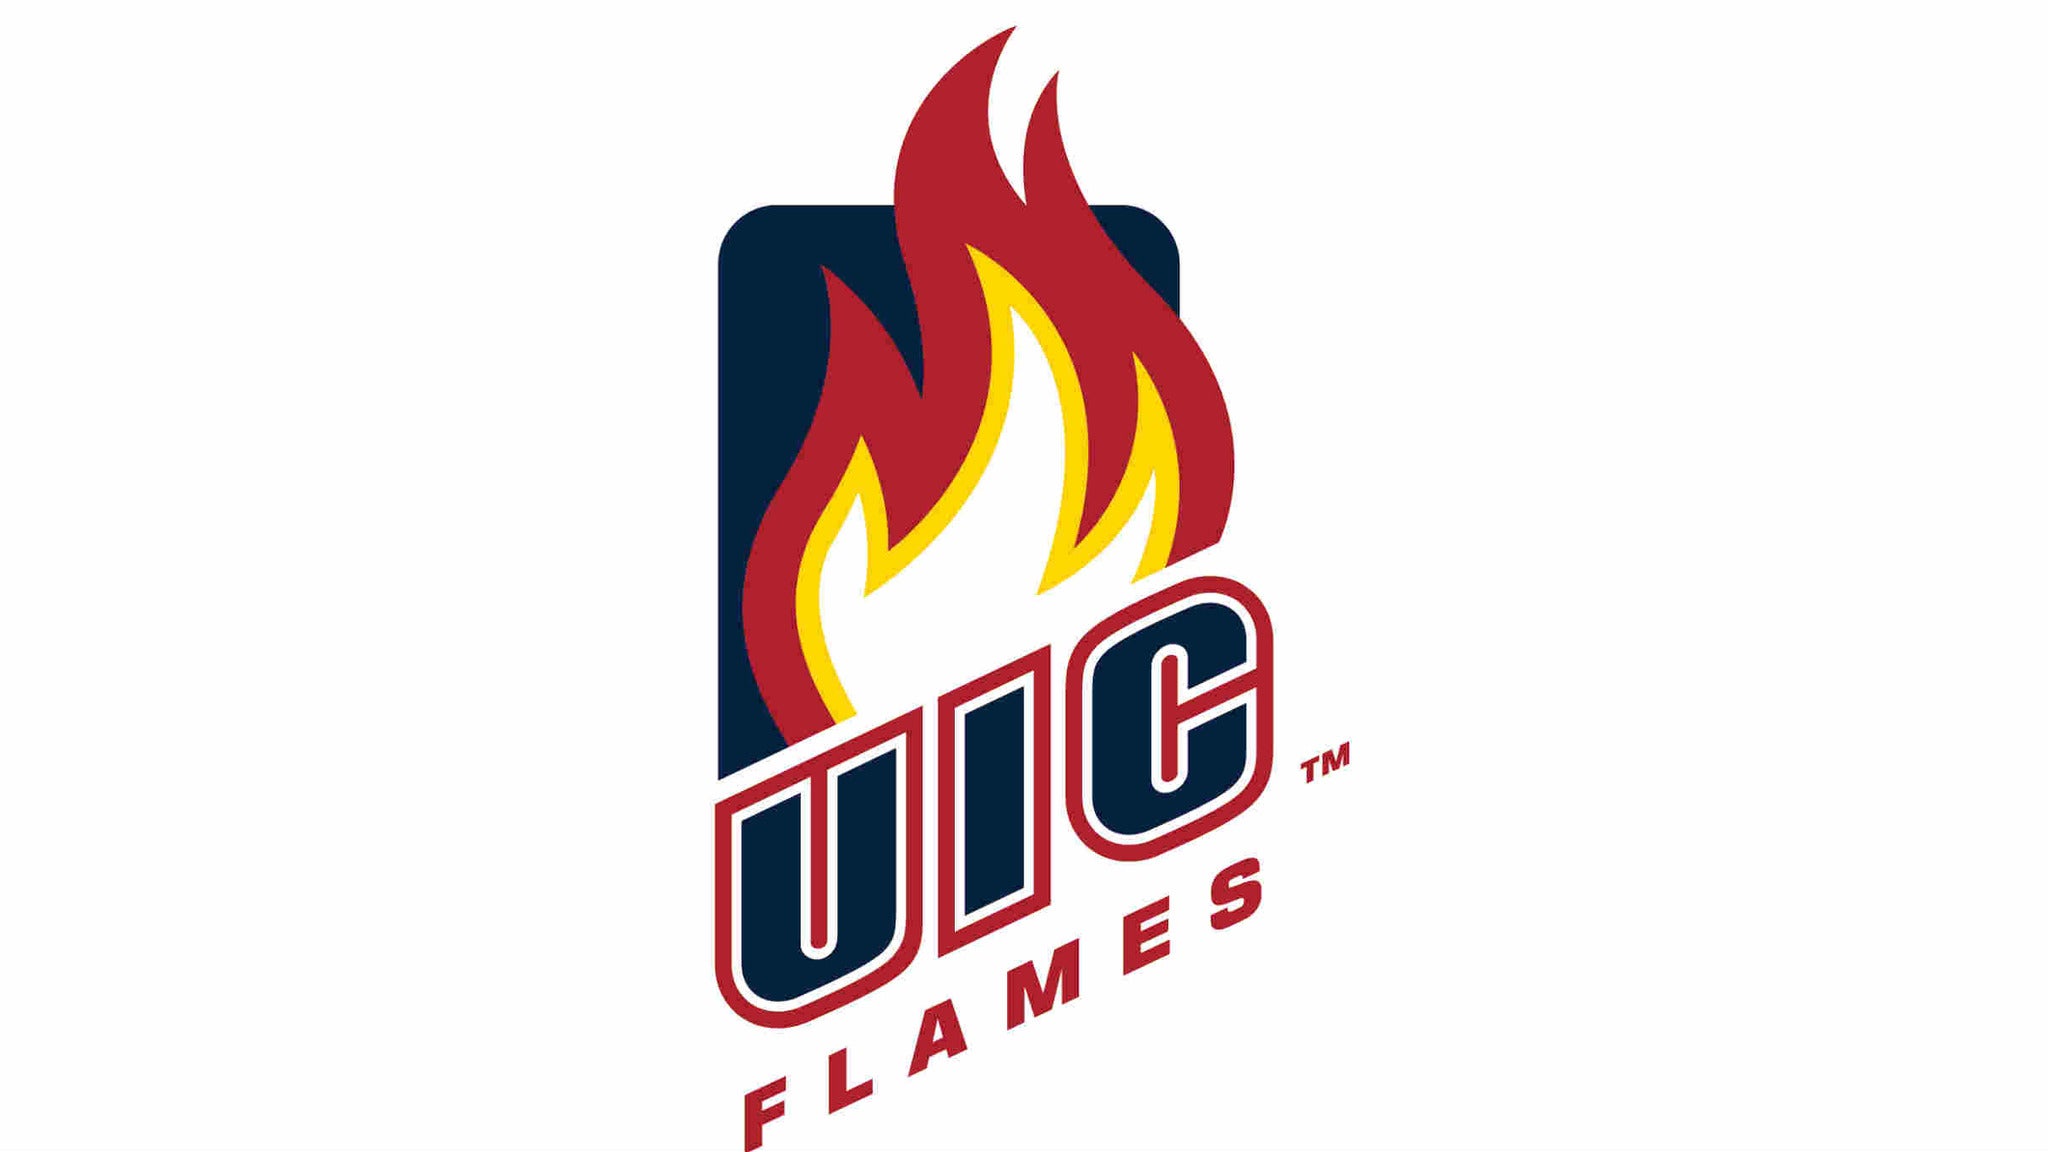 Uic Flames Mens Basketball Vs University Of Detroit Mercy Men S